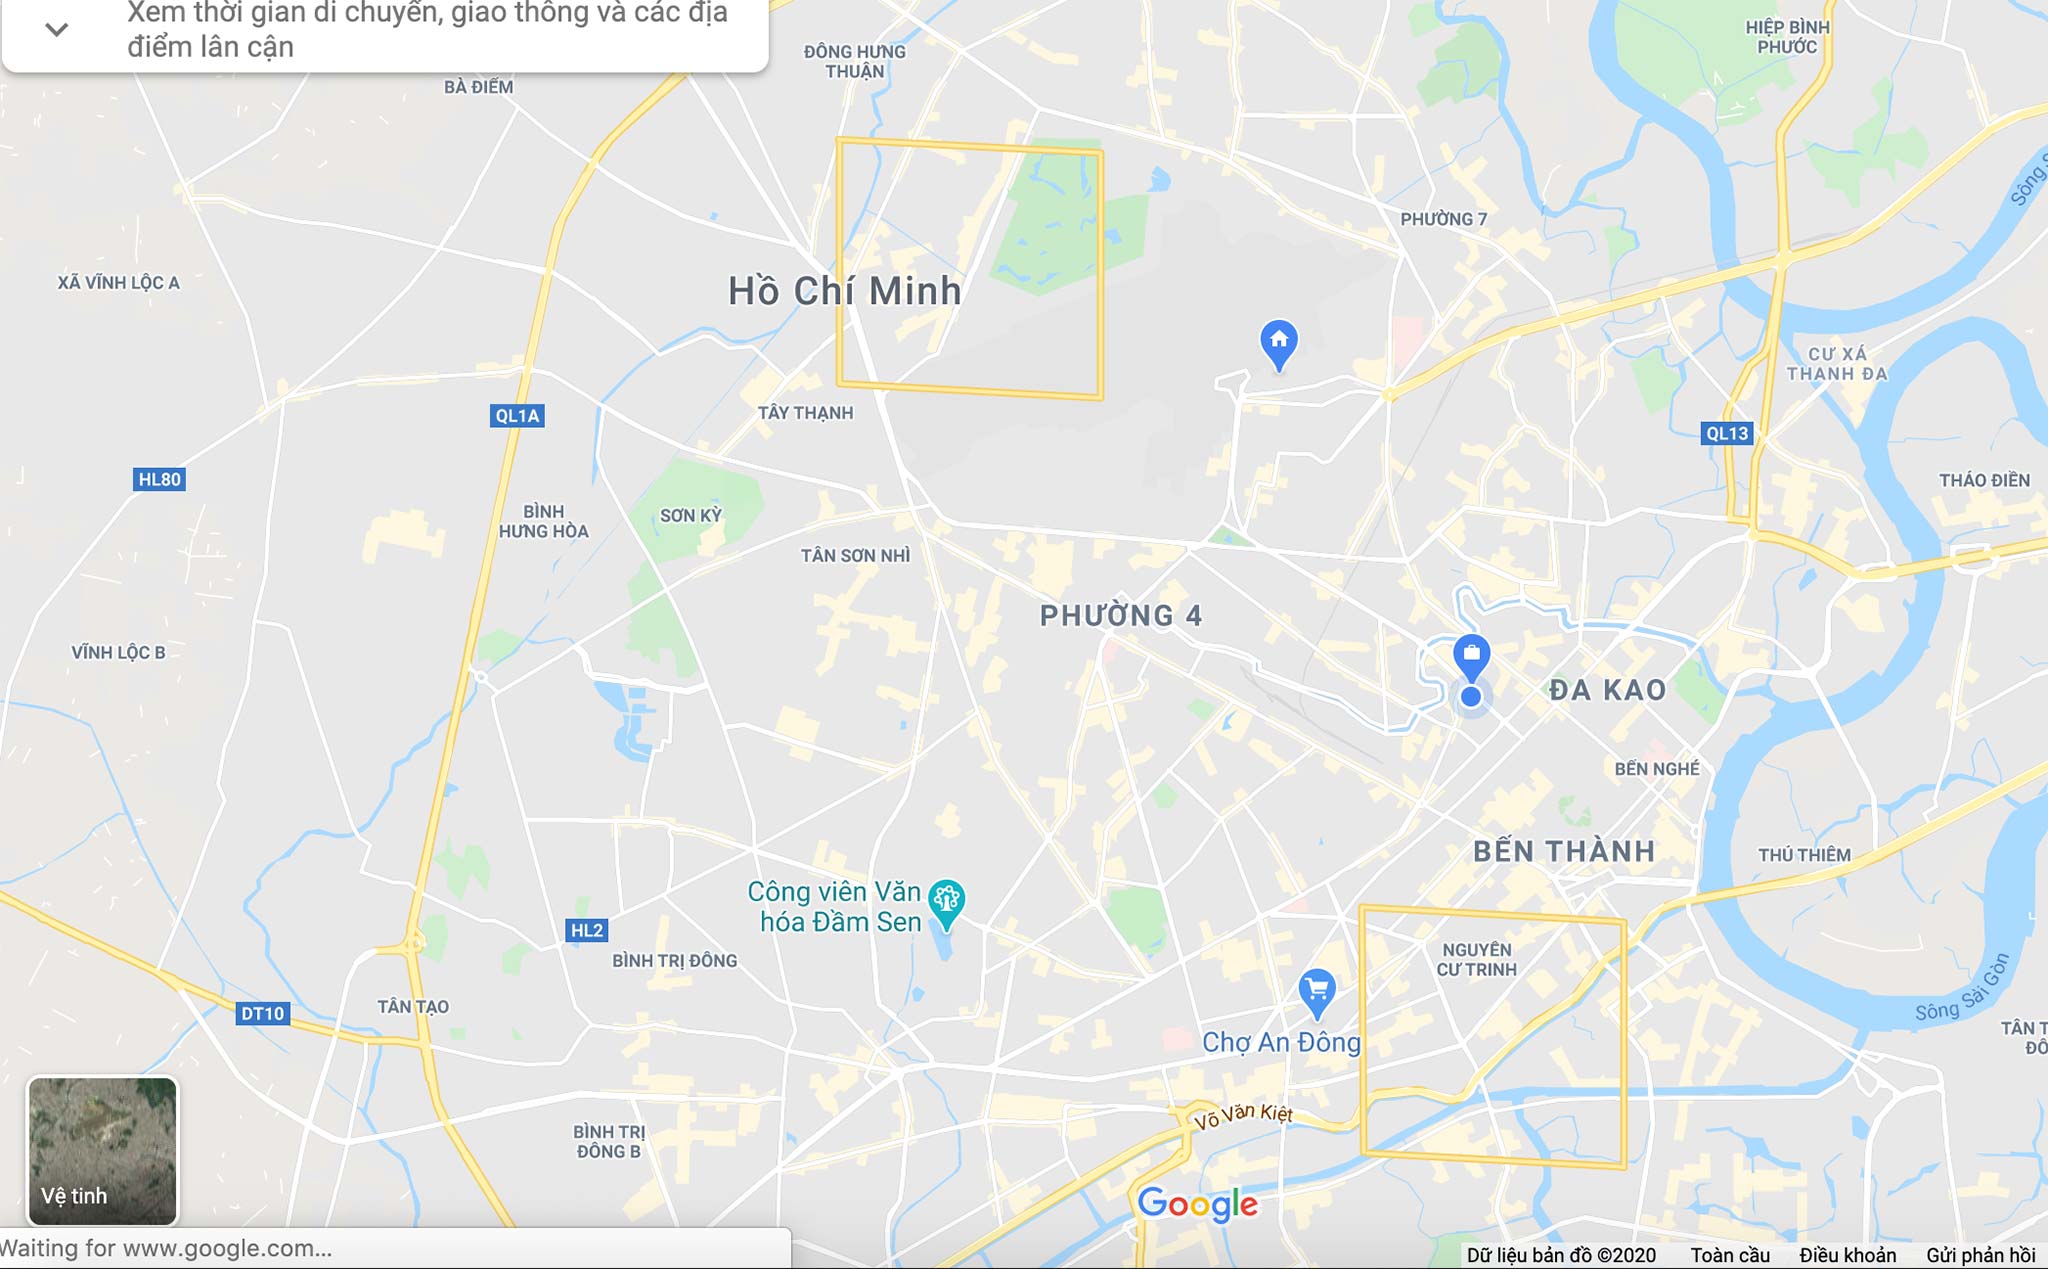 Google Maps xuất hiện hai ô vuông vàng ở khu vực TP. HCM, anh em nào biết đó là gì?